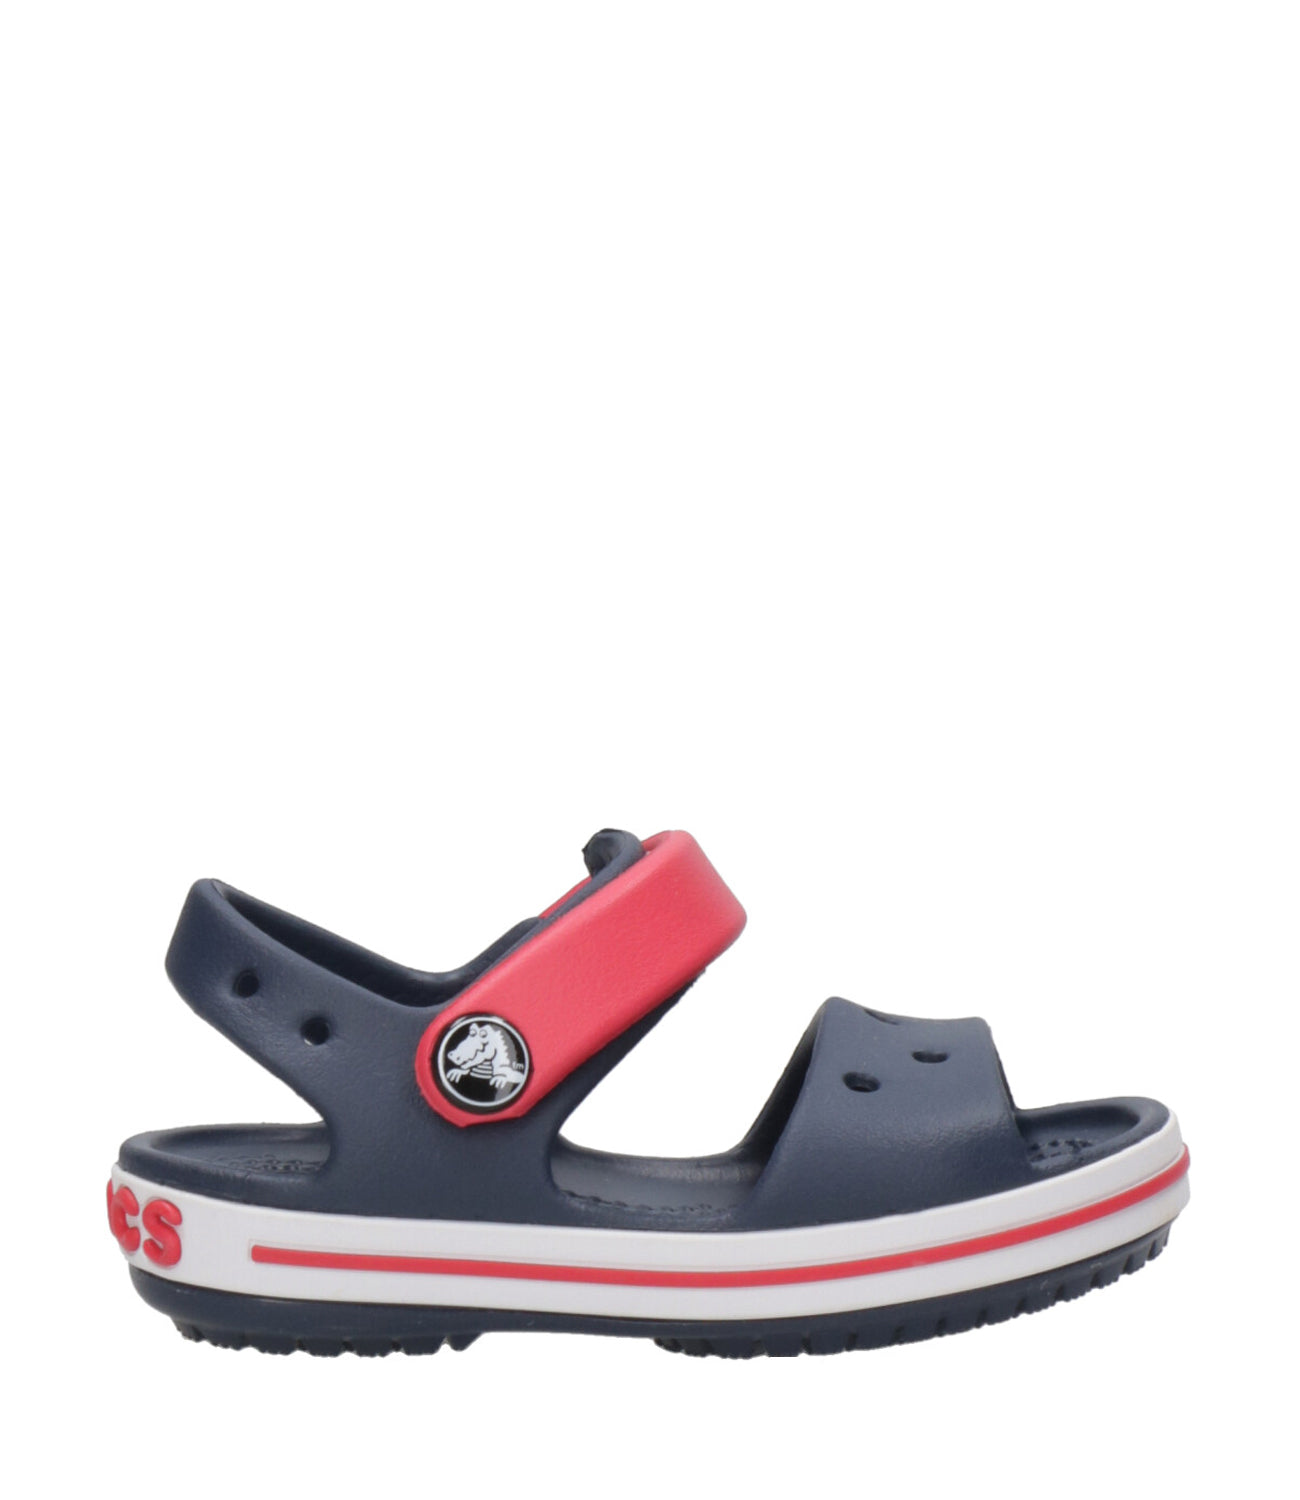 Crocs Kids | Crocband Sandal Sabot Navy Blue and Red